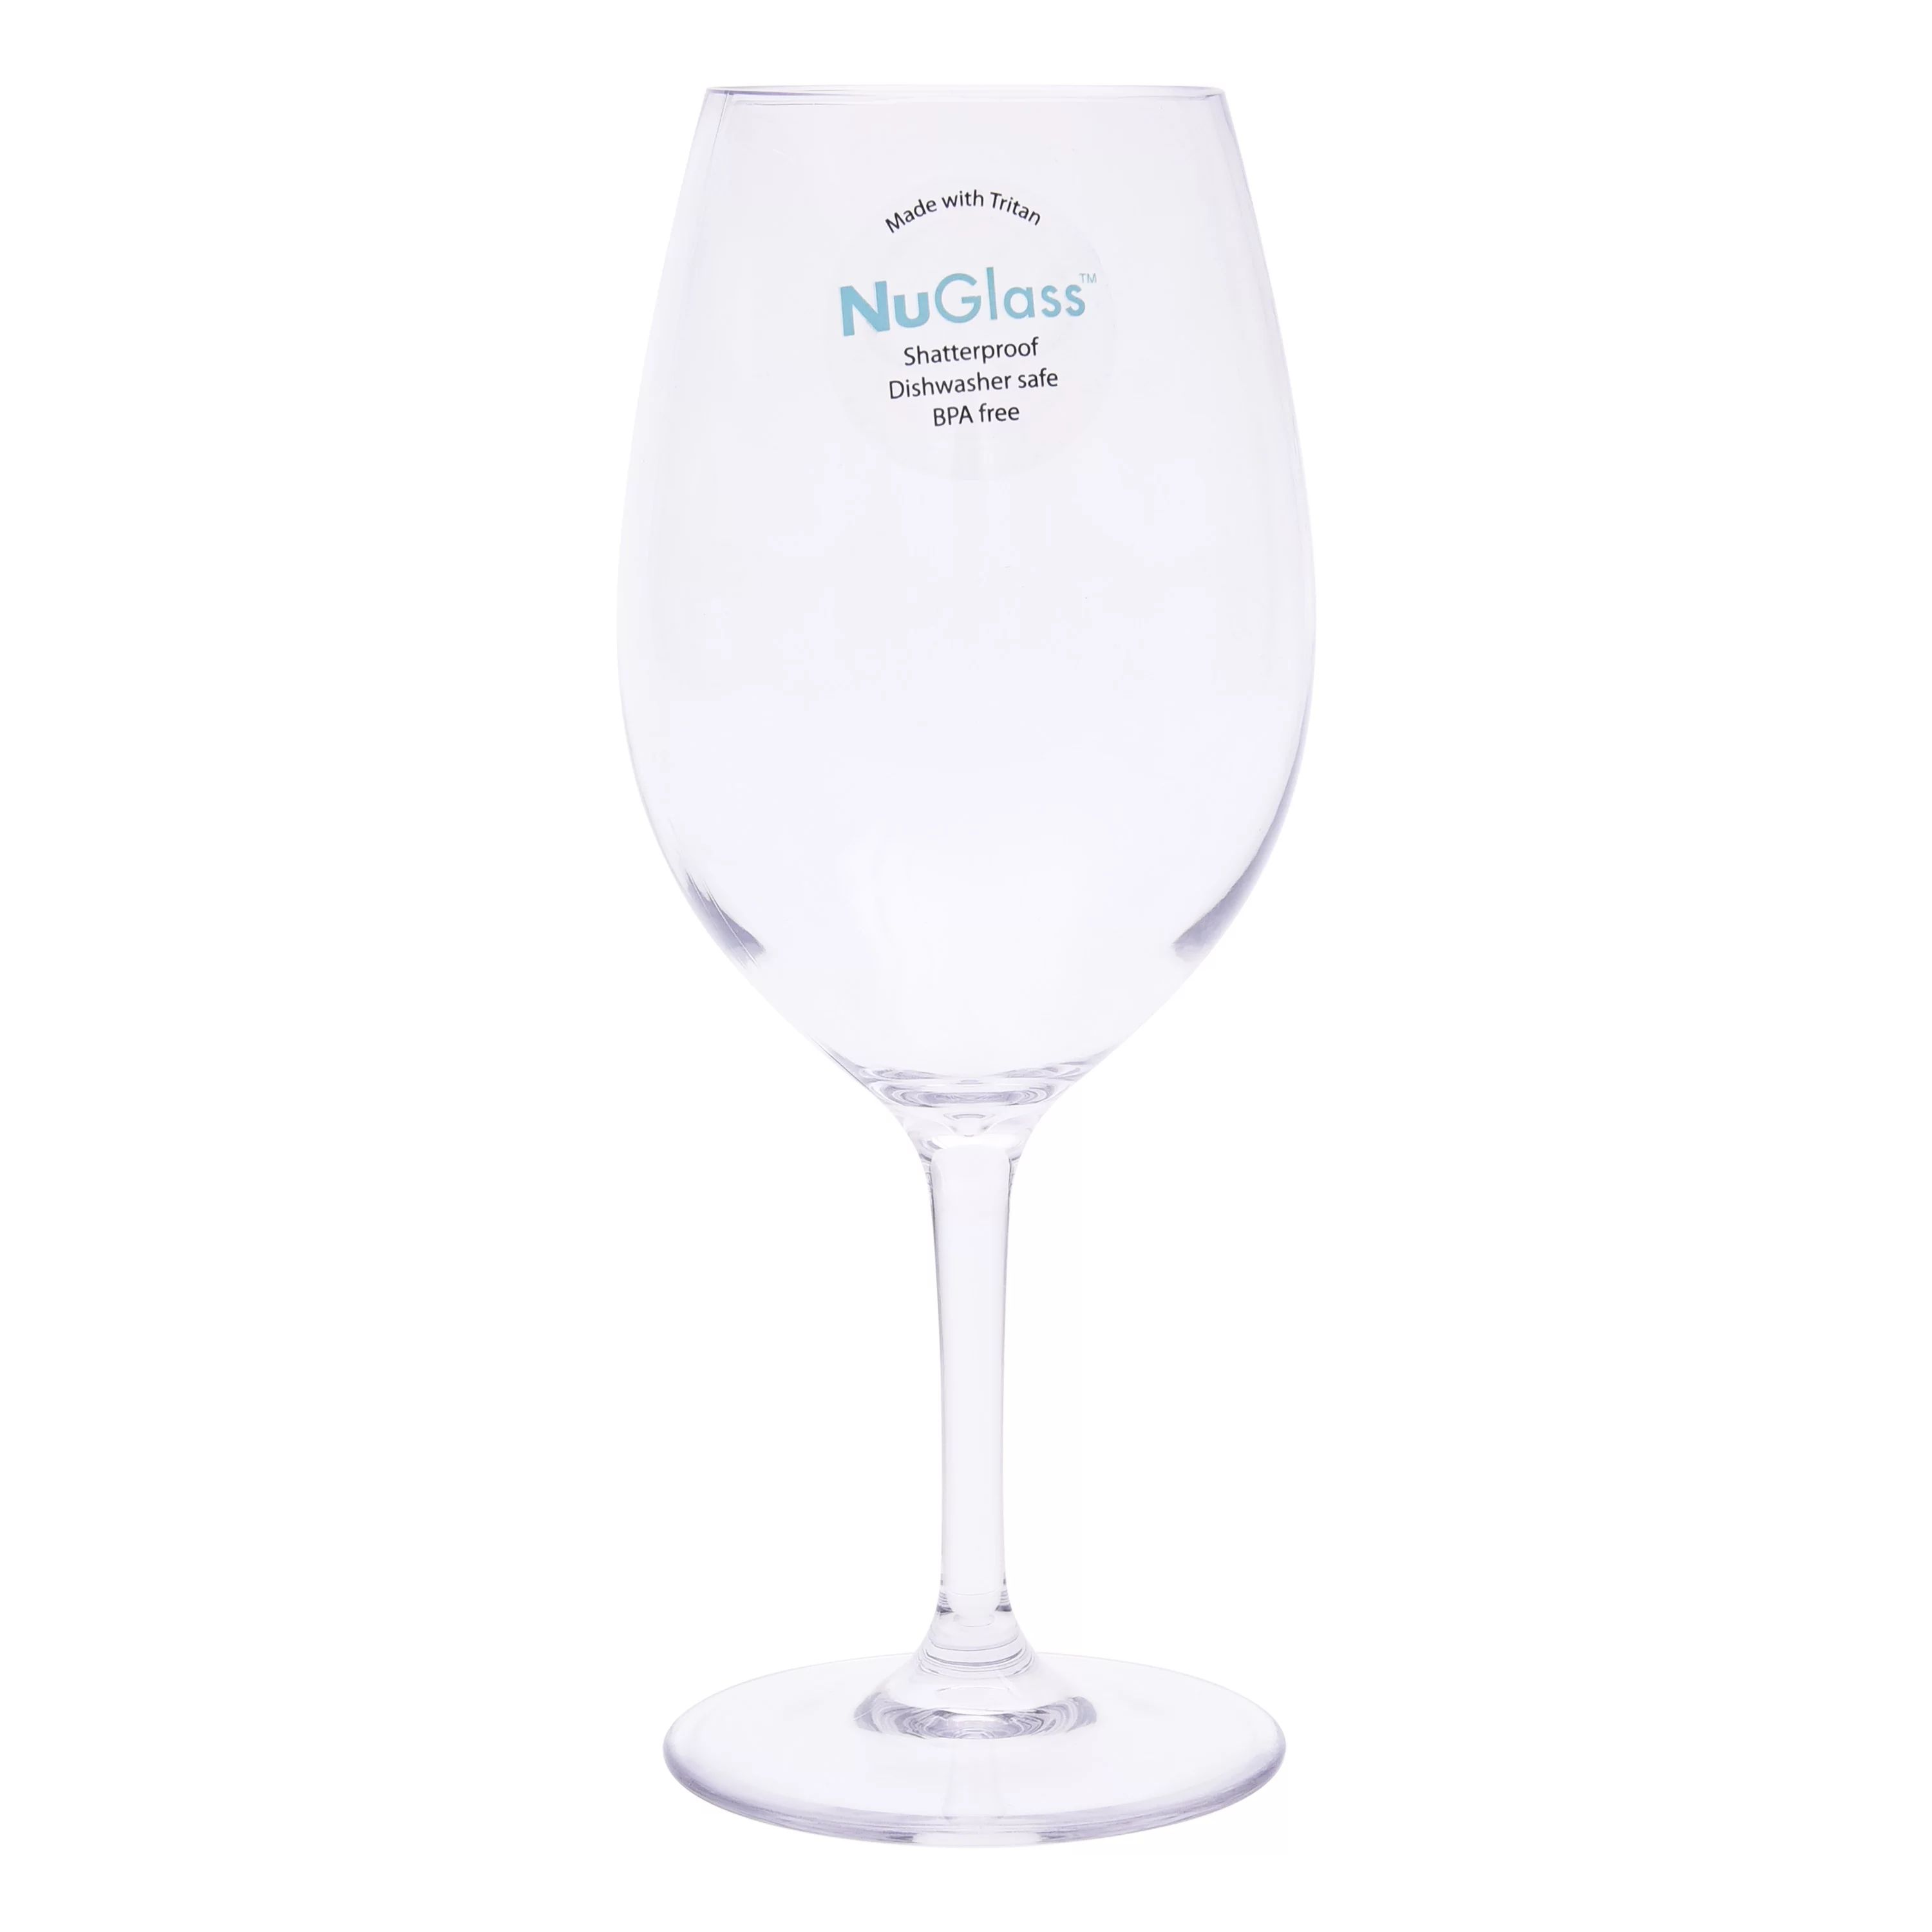 Better Homes & Gardens 20-Ounce Tritan Nuglass Stemmed Wine Glass, Clear | Walmart (US)